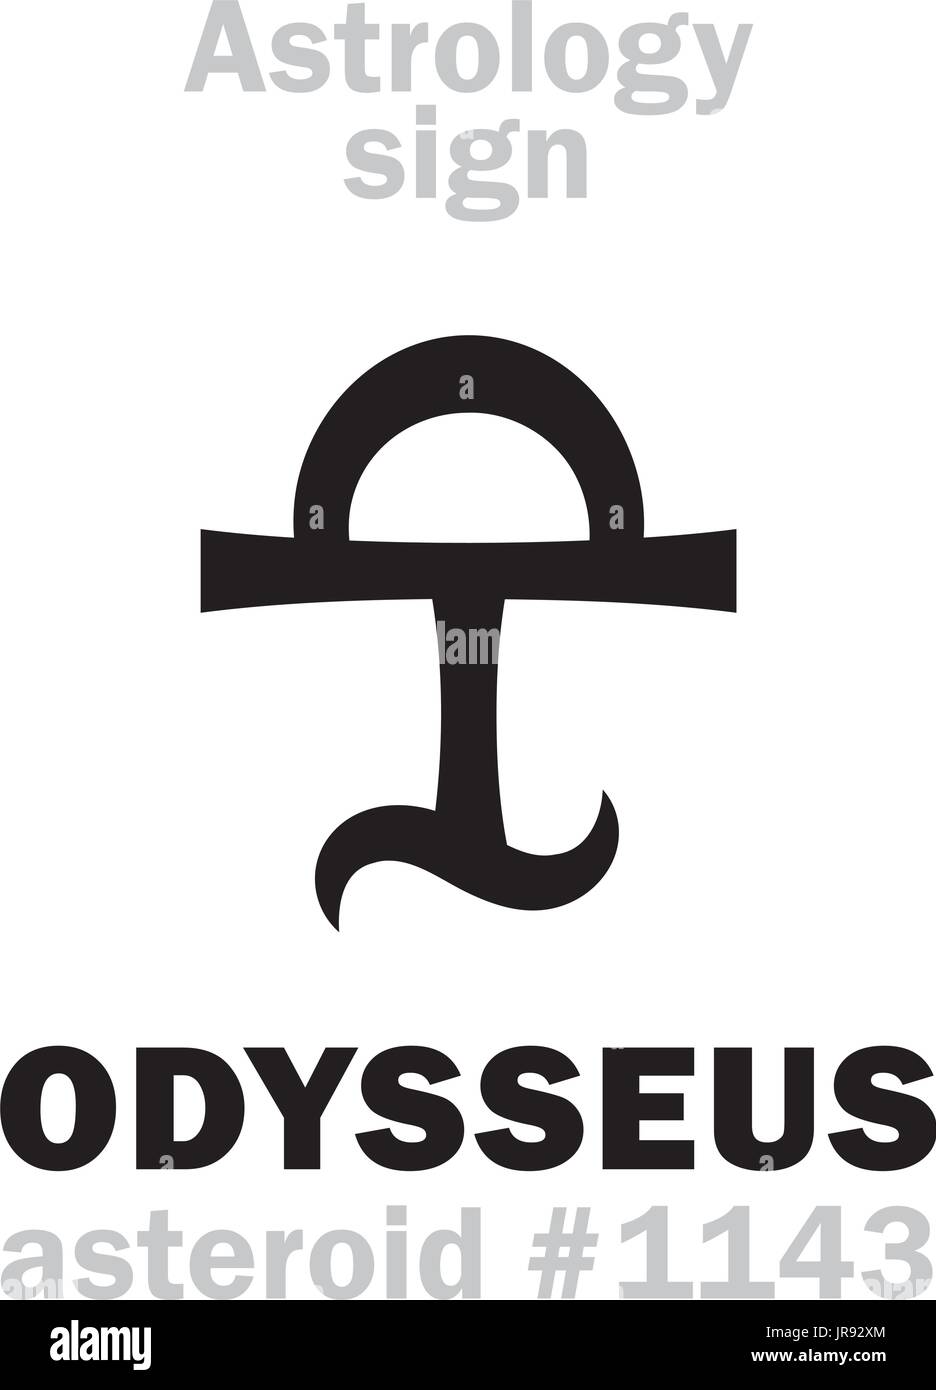 Astrologie-Alphabet: ODYSSEUS (Ulyxes), Asteroid #1143. Hieroglyphen Charakter Zeichen (einzelnes Symbol). Stock Vektor